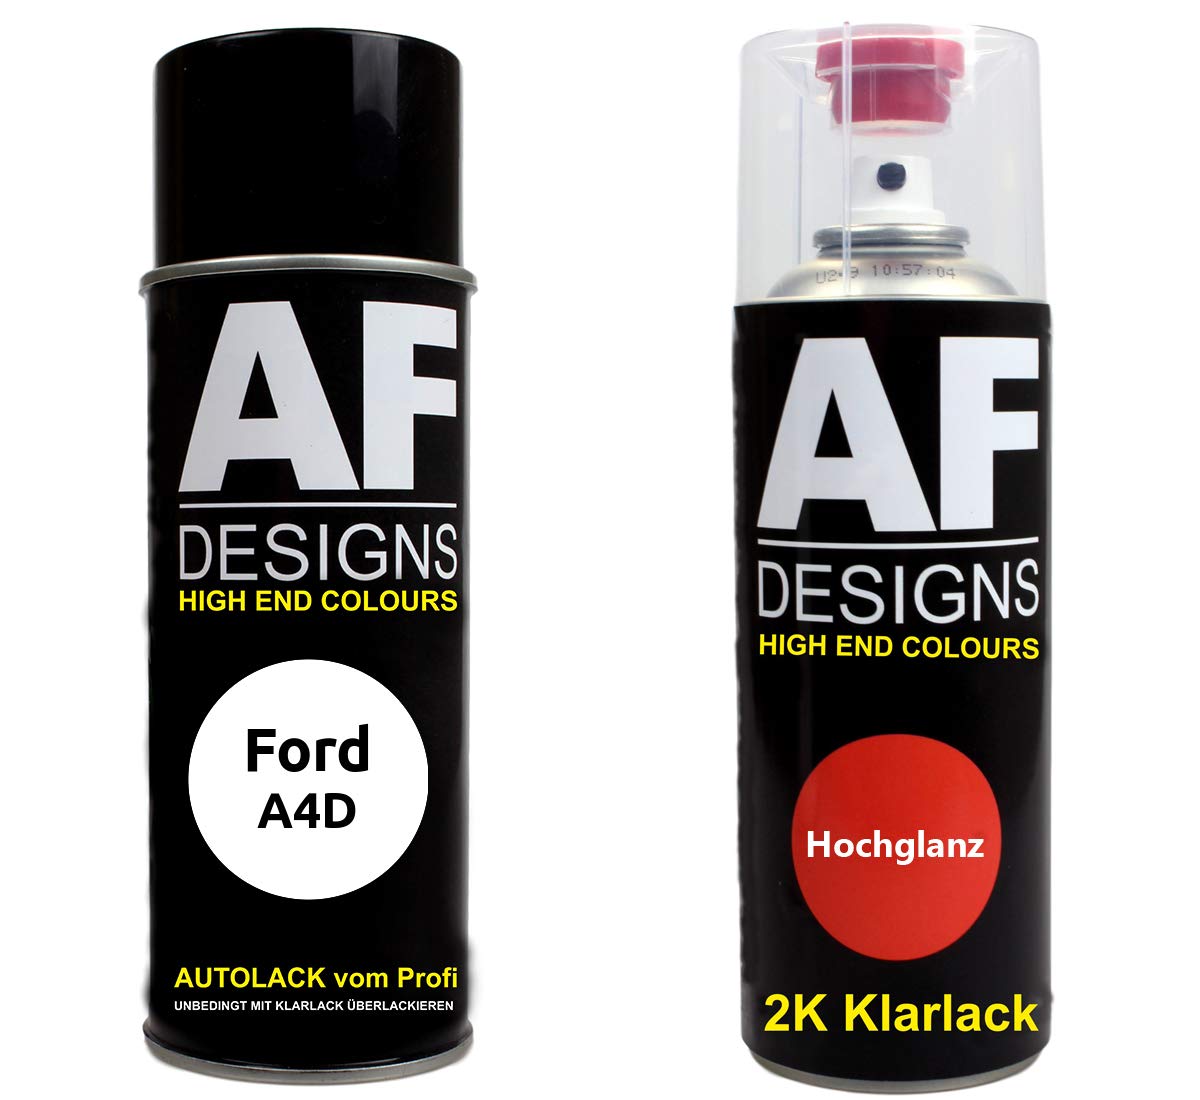 Autolack Spraydose Set für Ford A4D Arctic White 2K Klarlack Basislack Sprühdose Spraydosen 2x400ml von Alex Flittner Designs